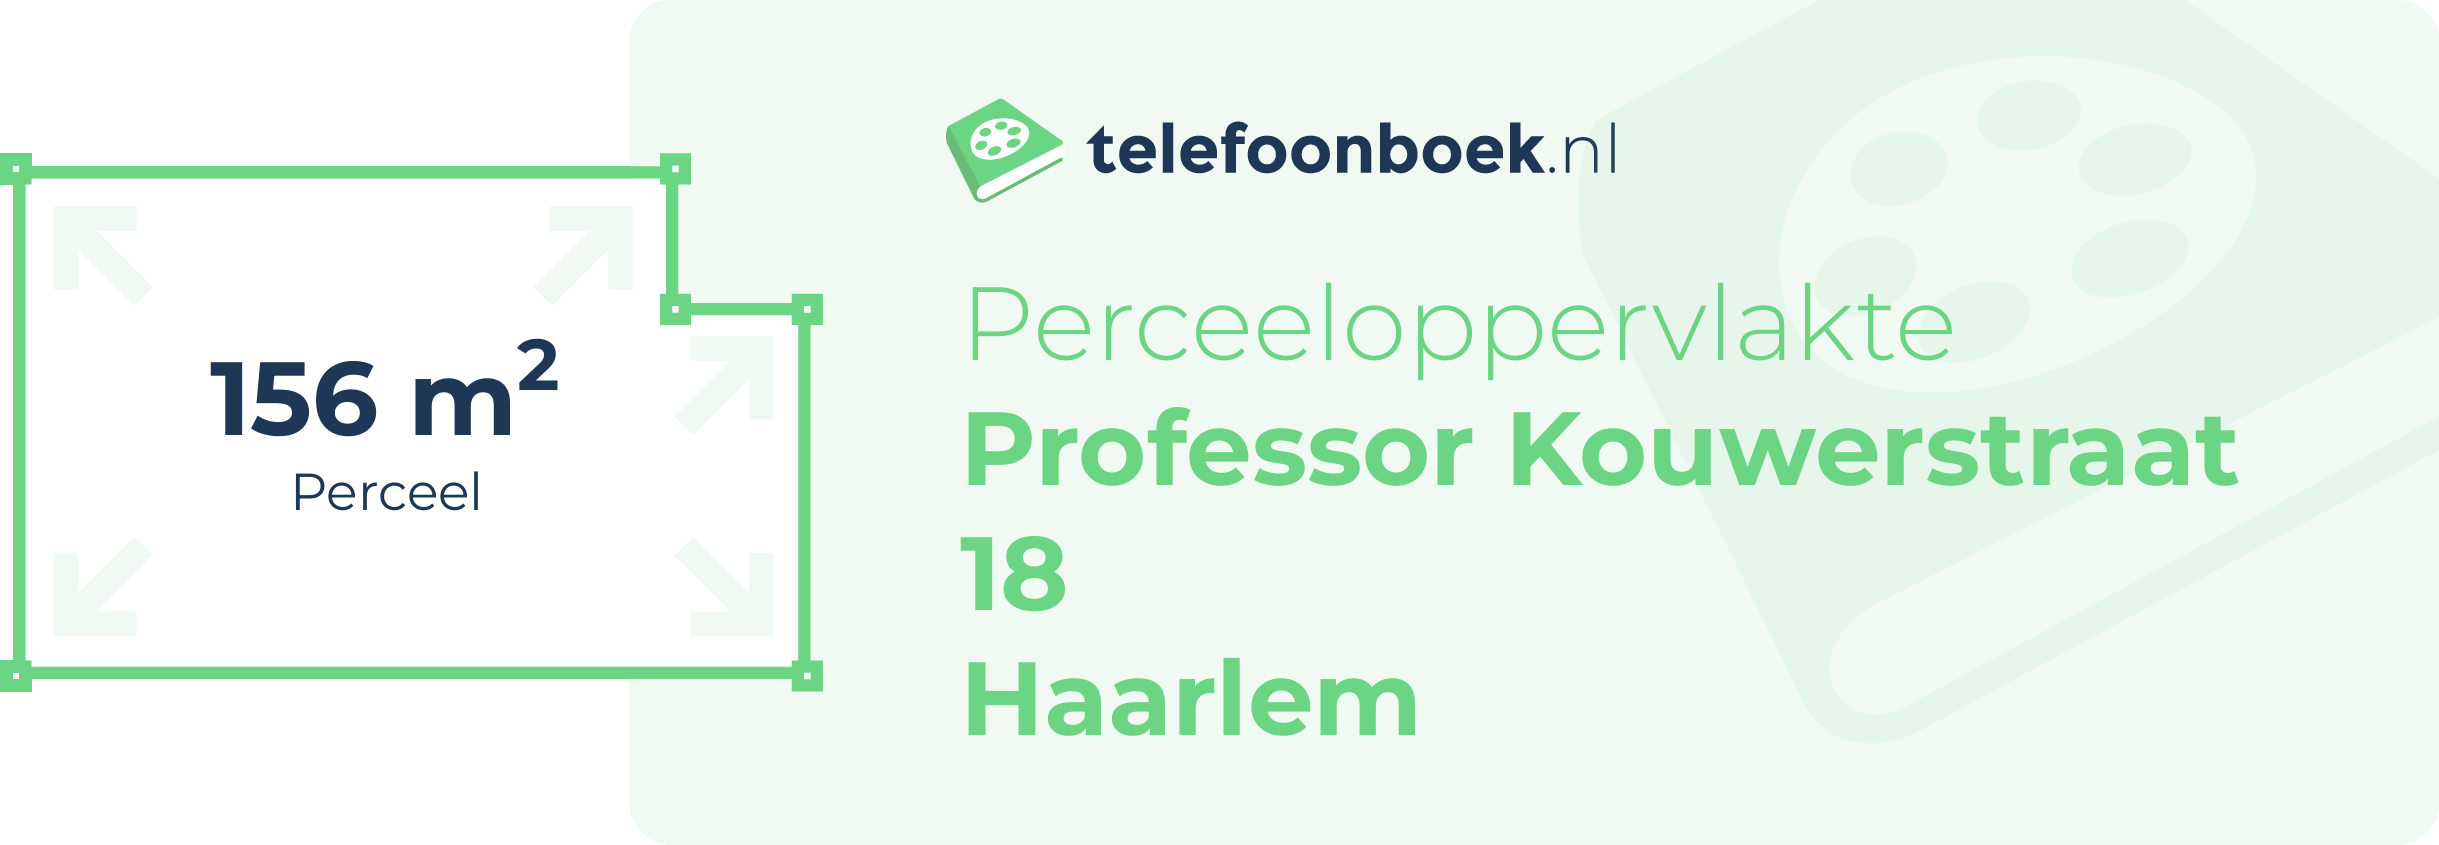 Perceeloppervlakte Professor Kouwerstraat 18 Haarlem